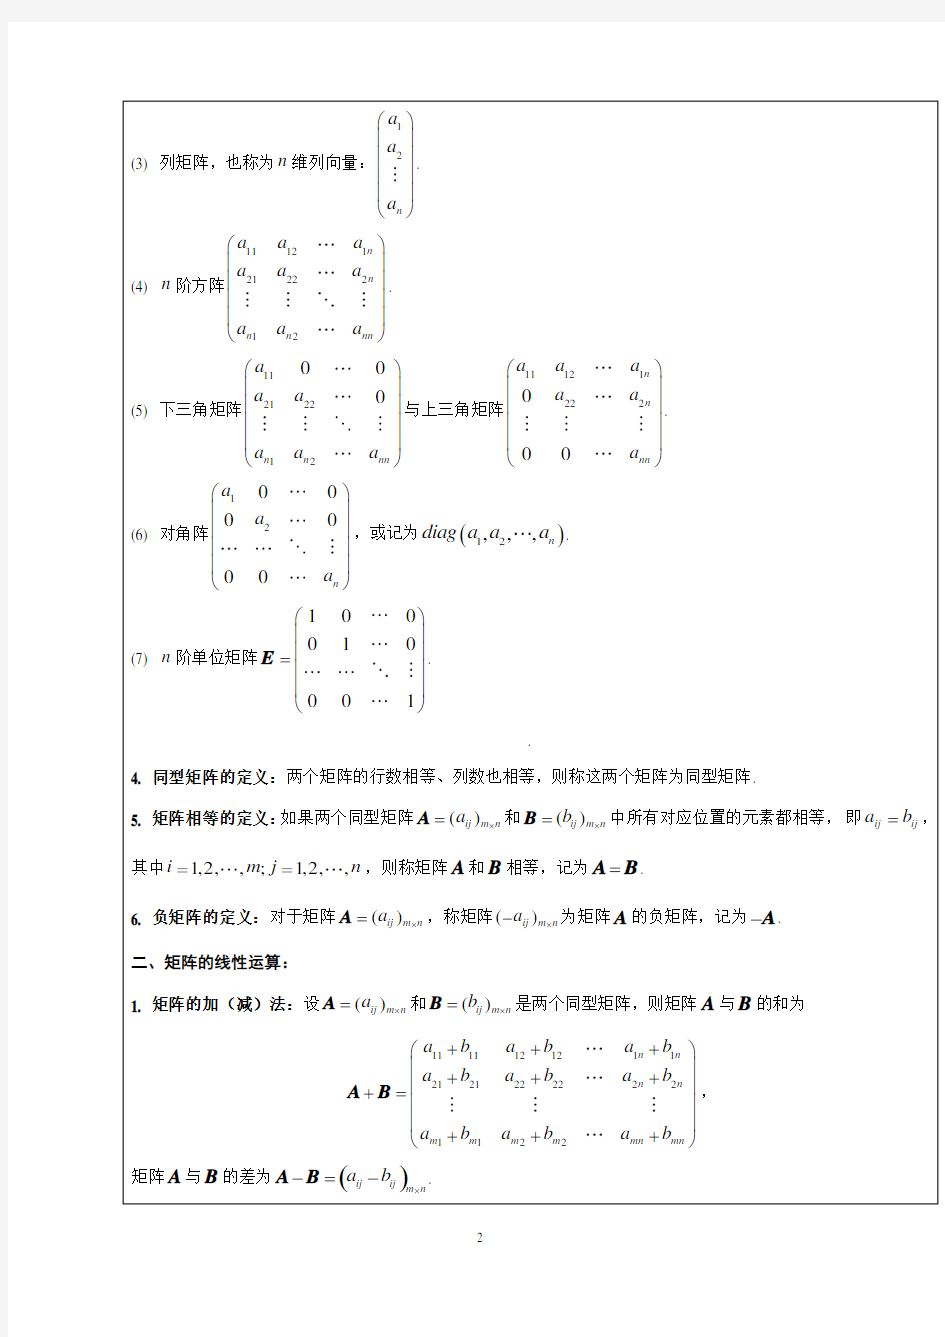 同济大学线性代数教案第一章线性方程组与矩阵